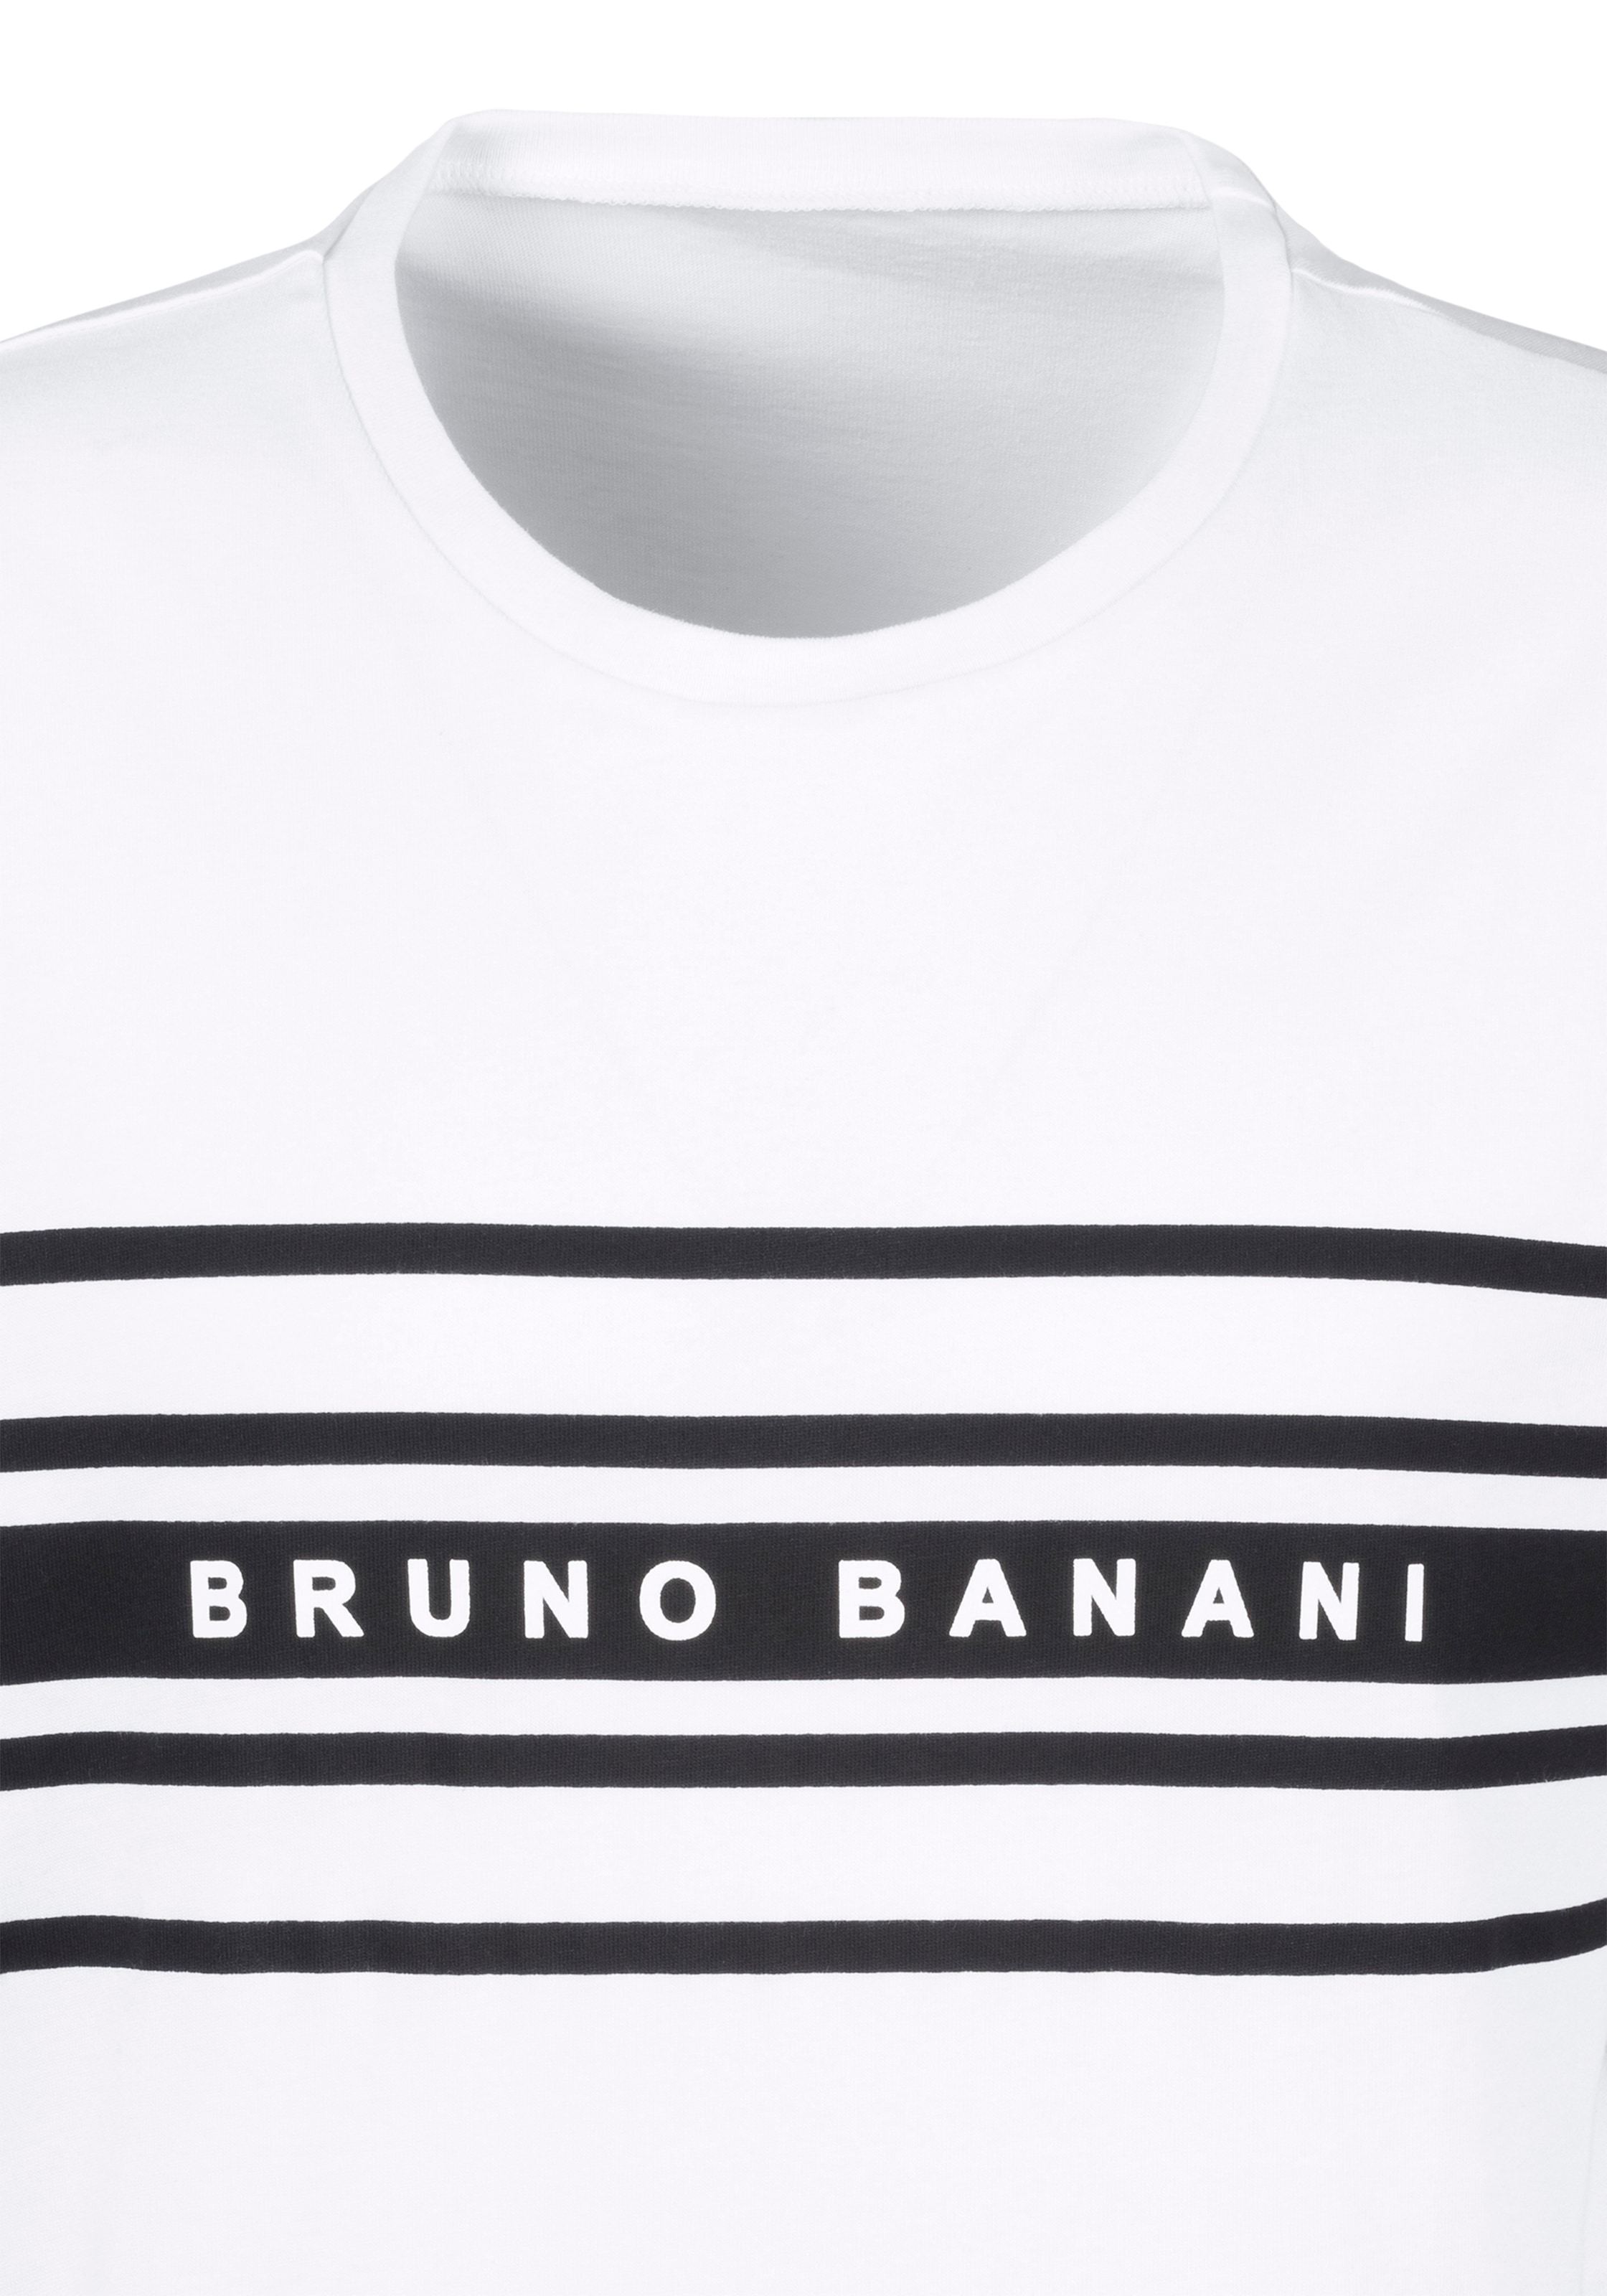 mit tlg., 1 Bruno Shorty, Stück), versandkostenfrei Logodruck Banani auf (2